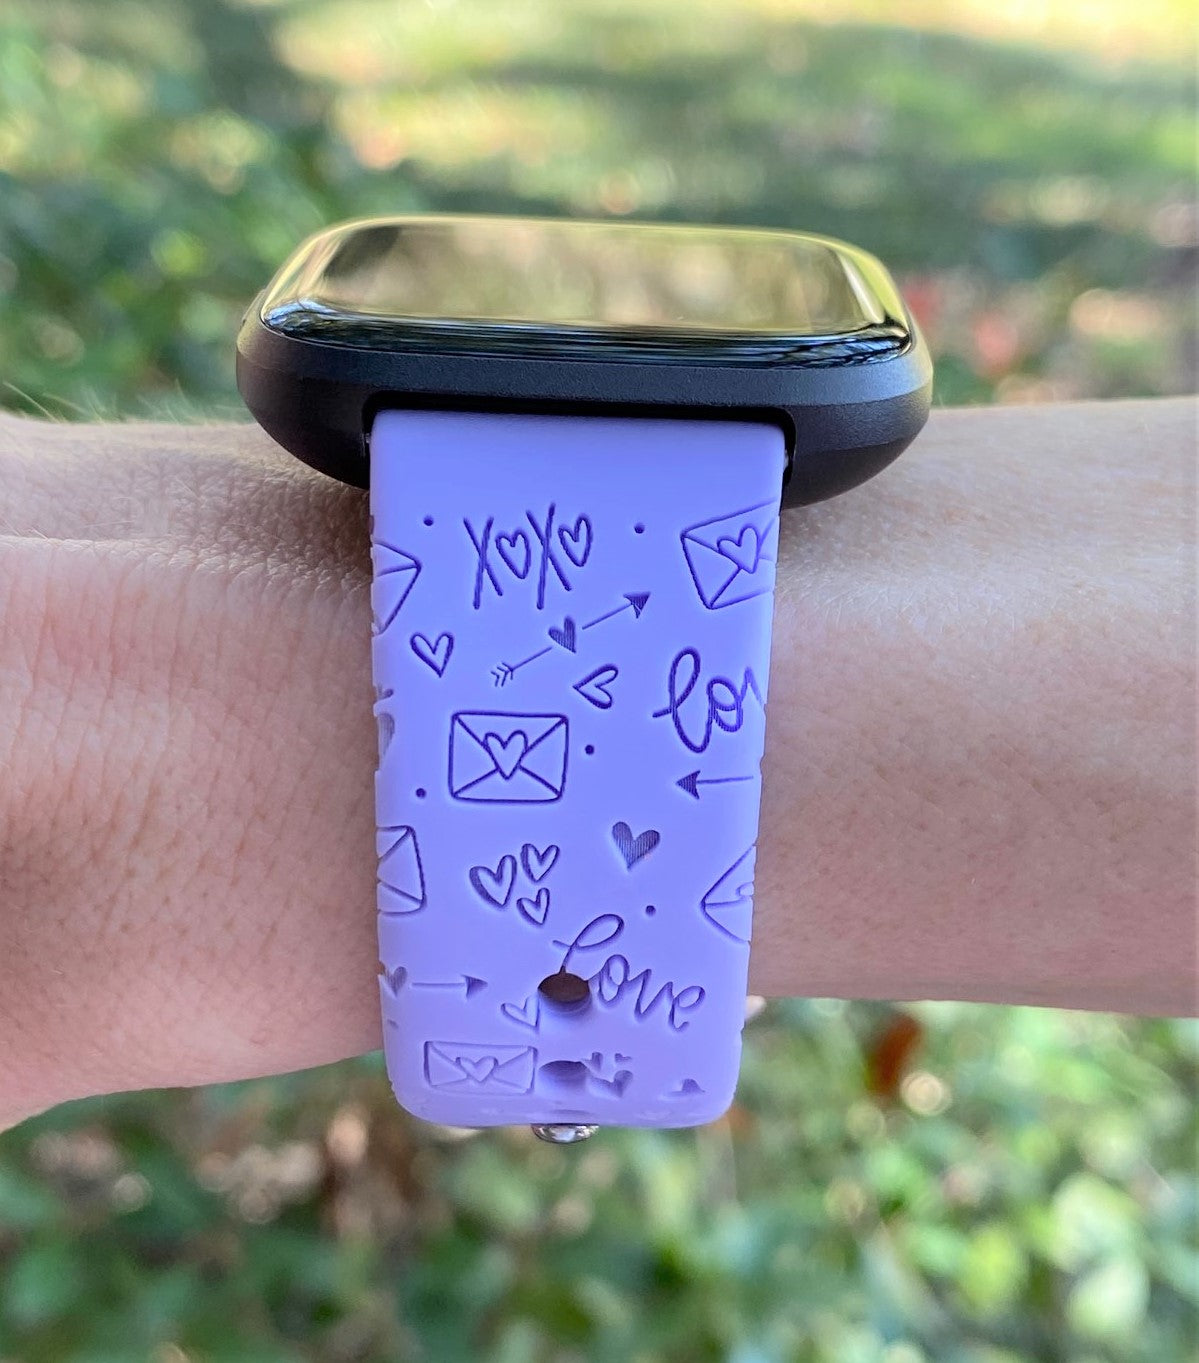 Xoxo Valentine's Fitbit Versa 1/2 Watch Band